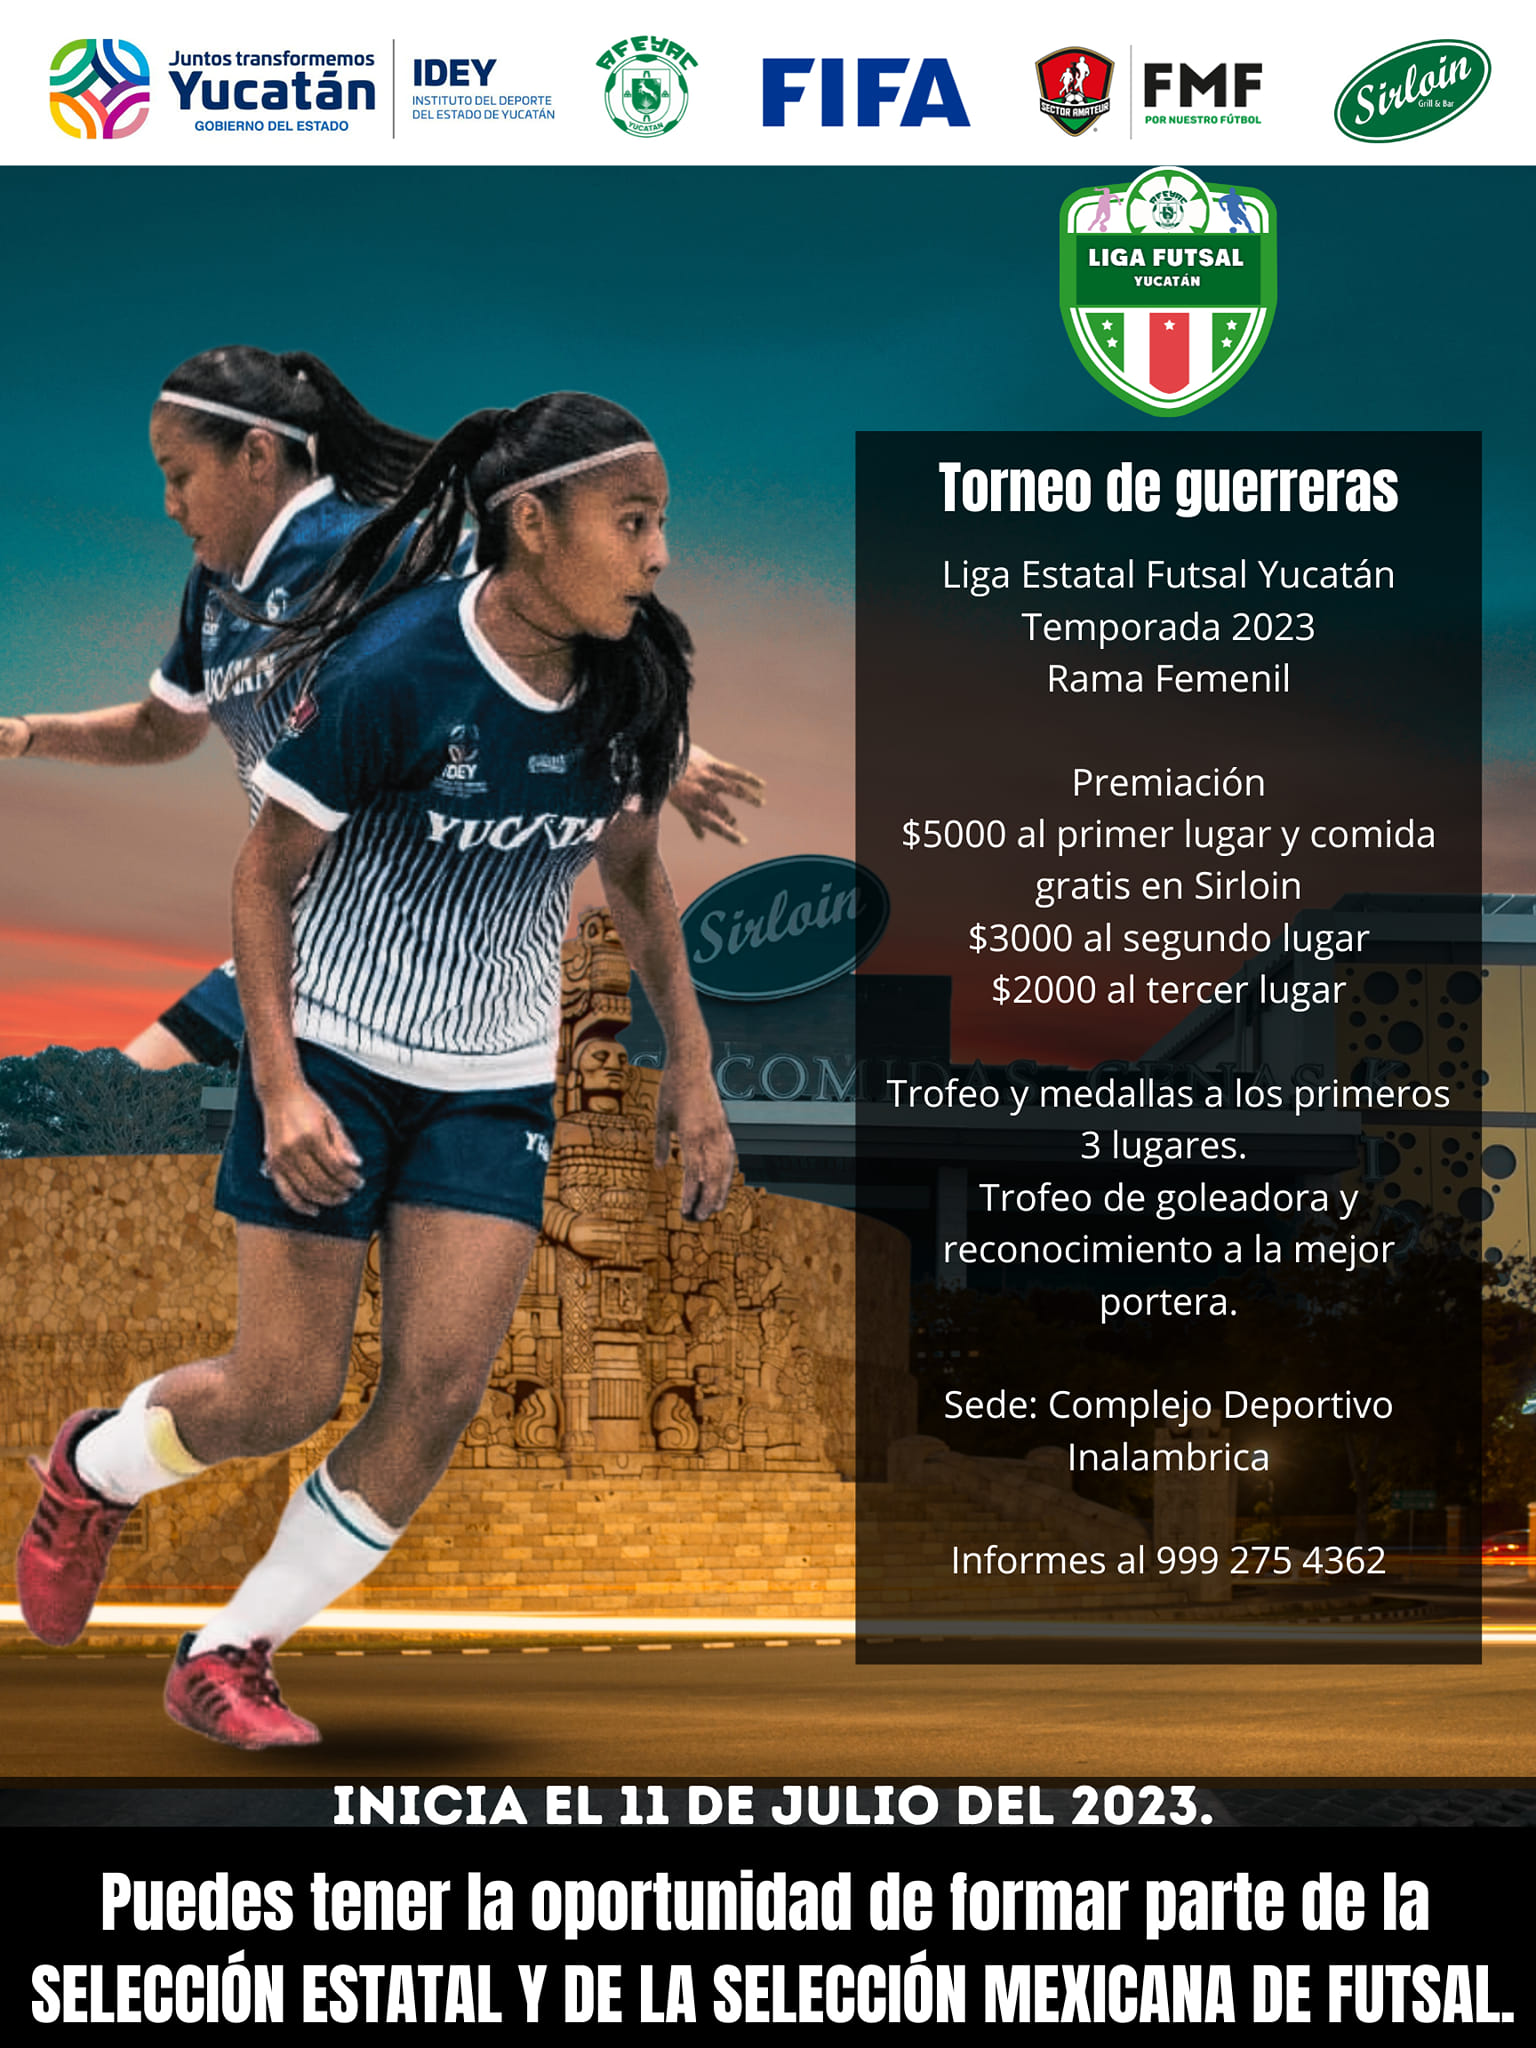 ¿Dónde jugar Futsal en Yucatán? aquí te decimos